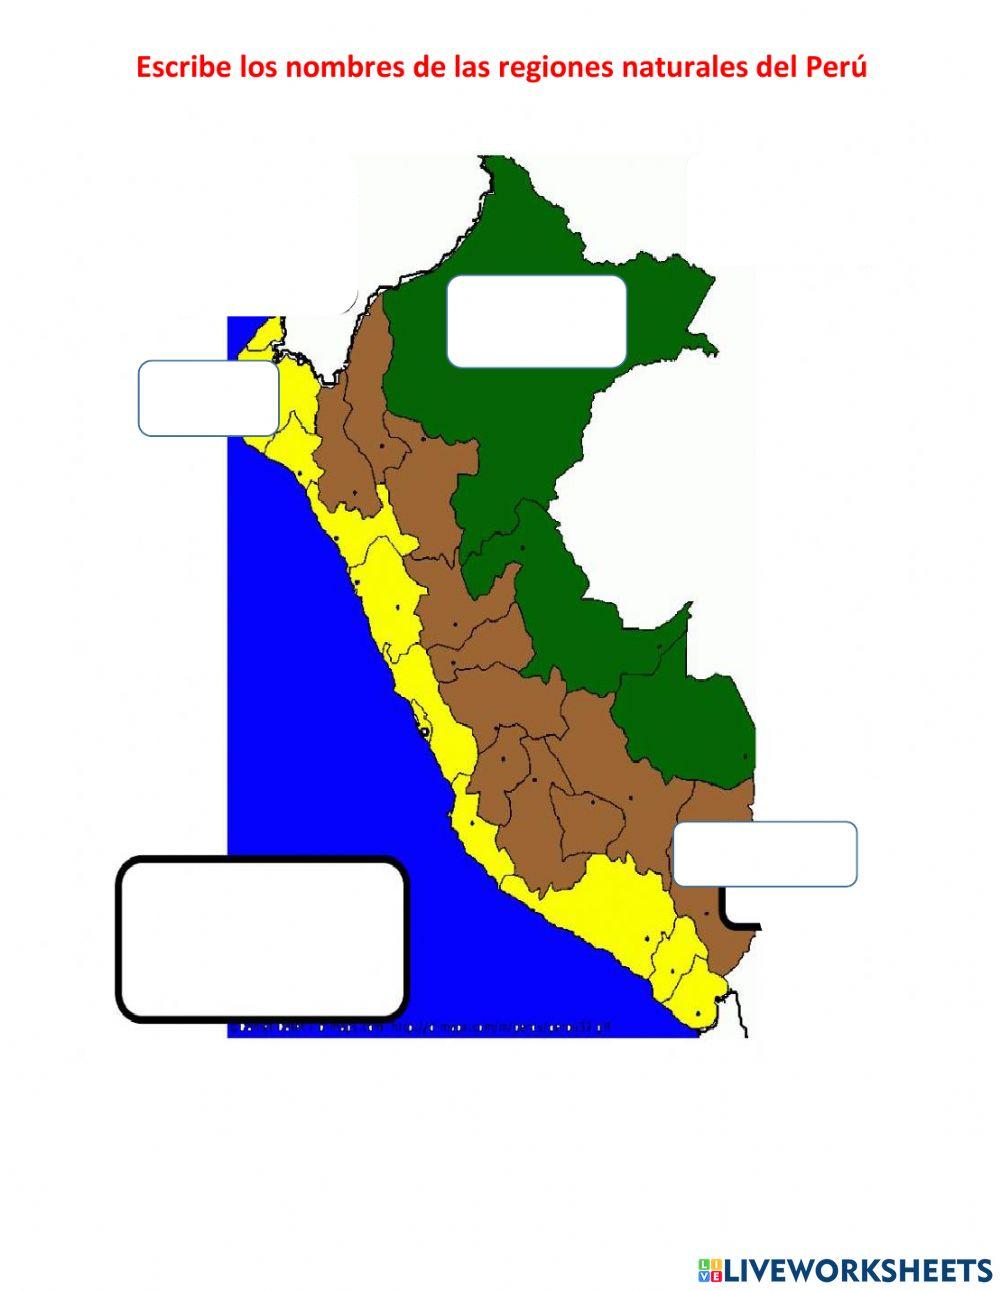 Escribe las regiones del Perú